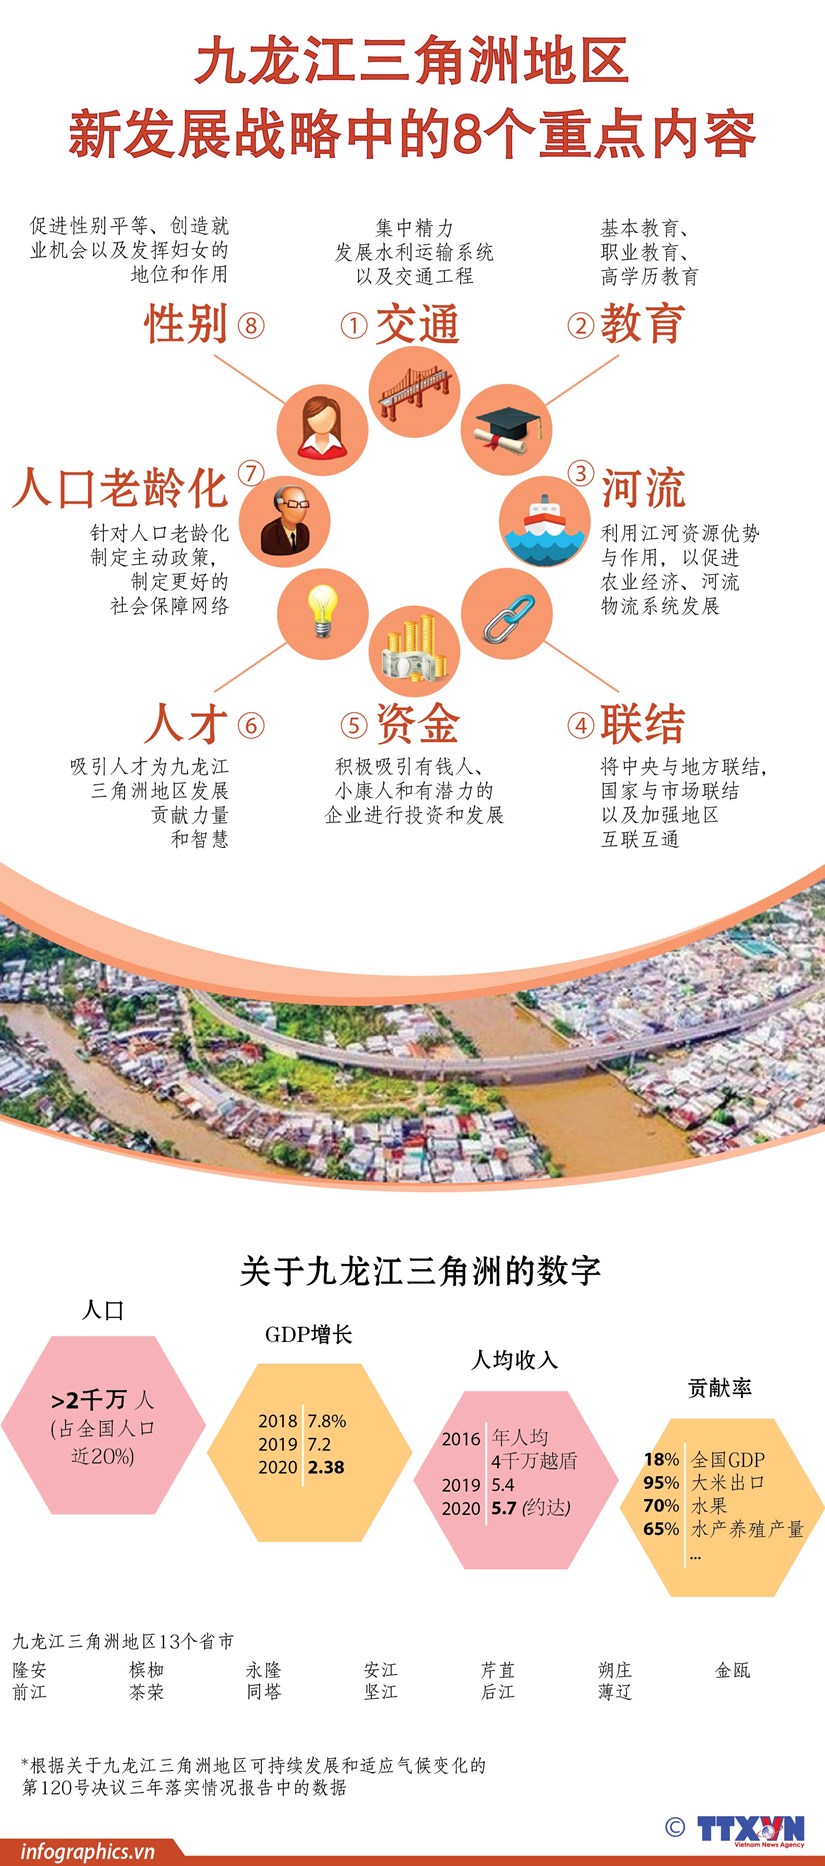 图表新闻：九龙江三角洲地区新发展战略中的8个重点内容 hinh anh 1